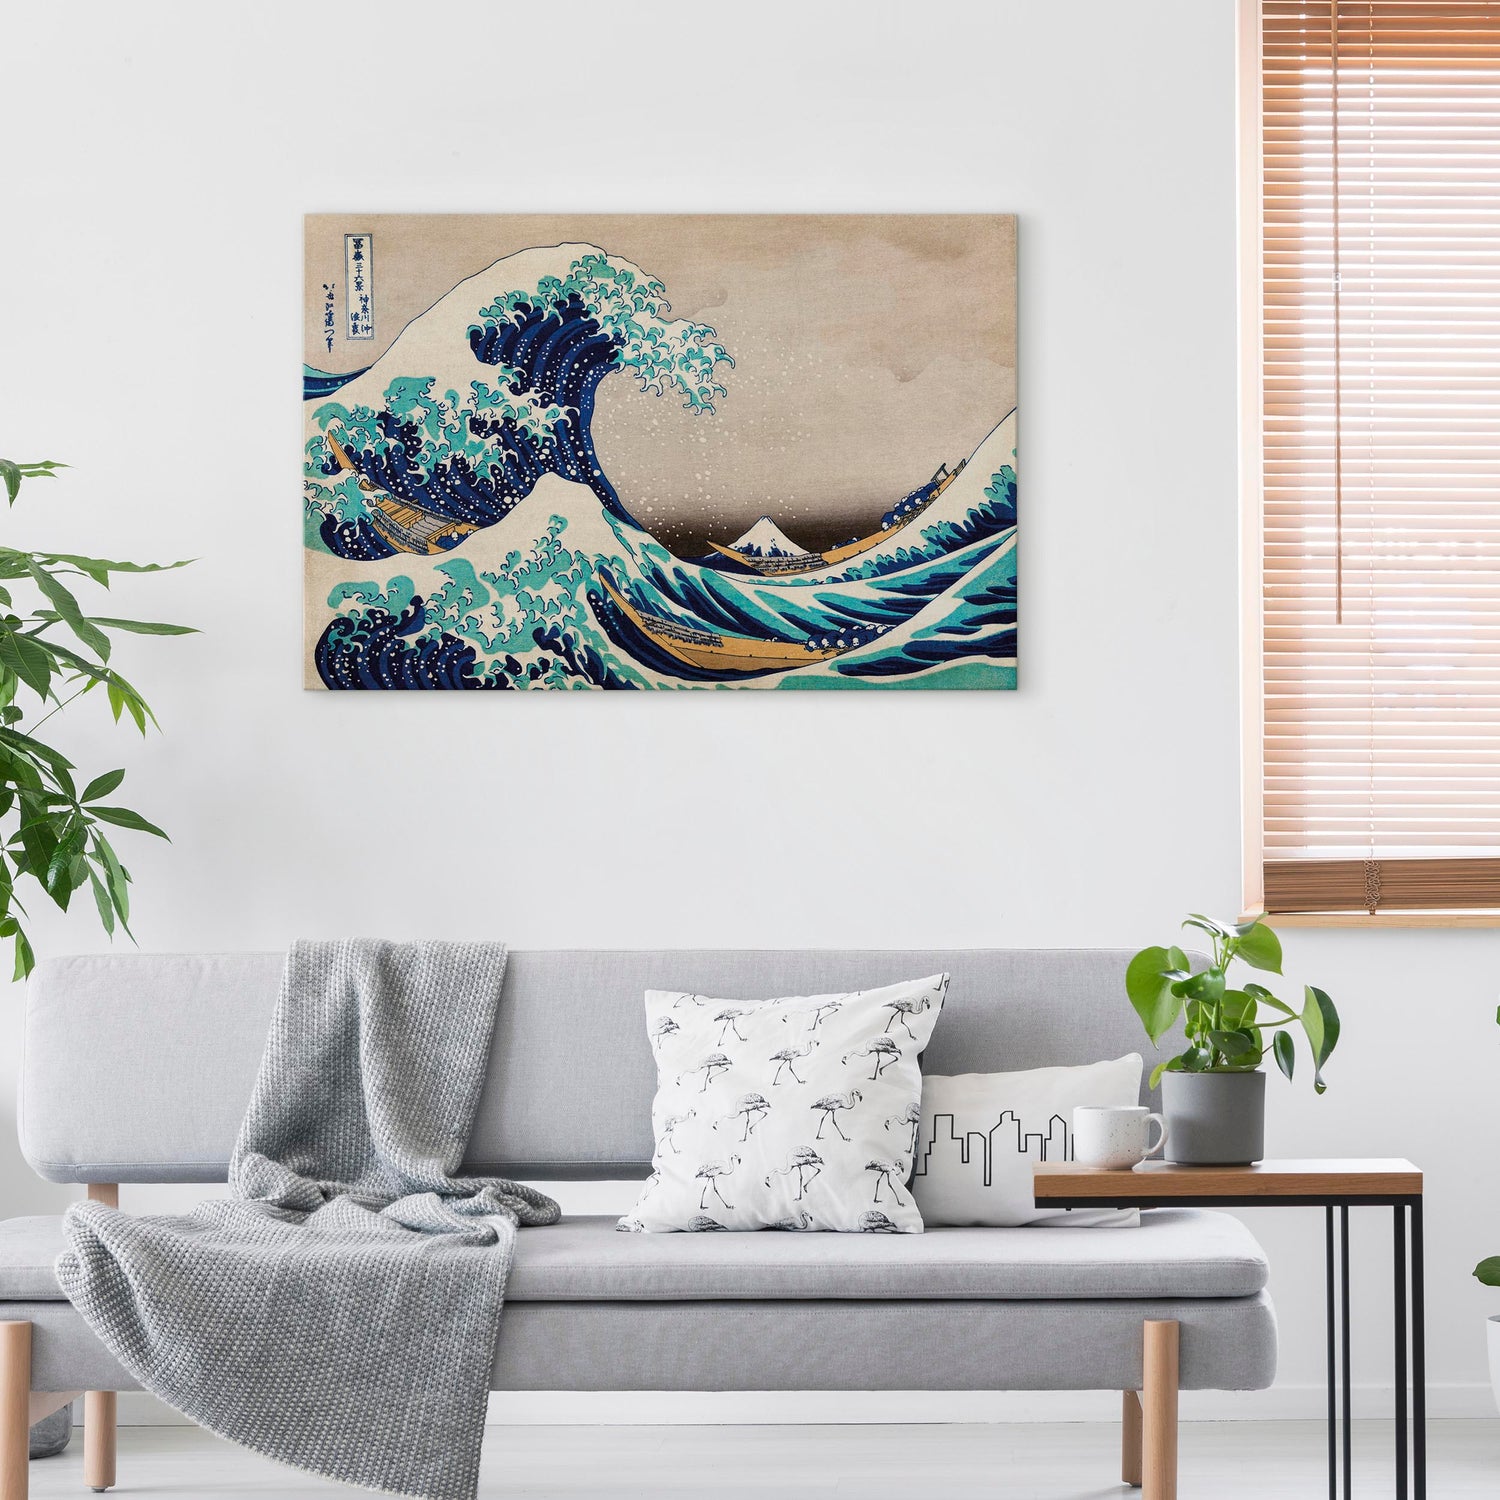 Reproduction Canvas Wall Art - The Great Wave off Kanagawa